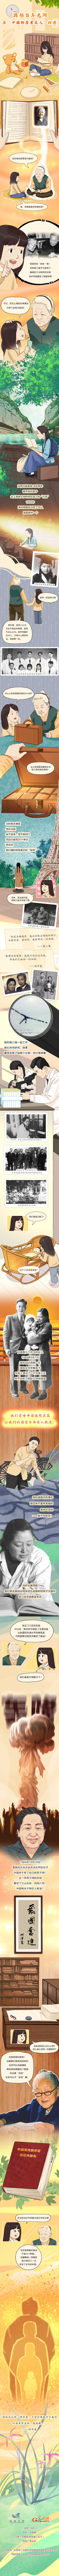 【科普长图】跨越百年光阴，与“中国的居里夫人”相遇